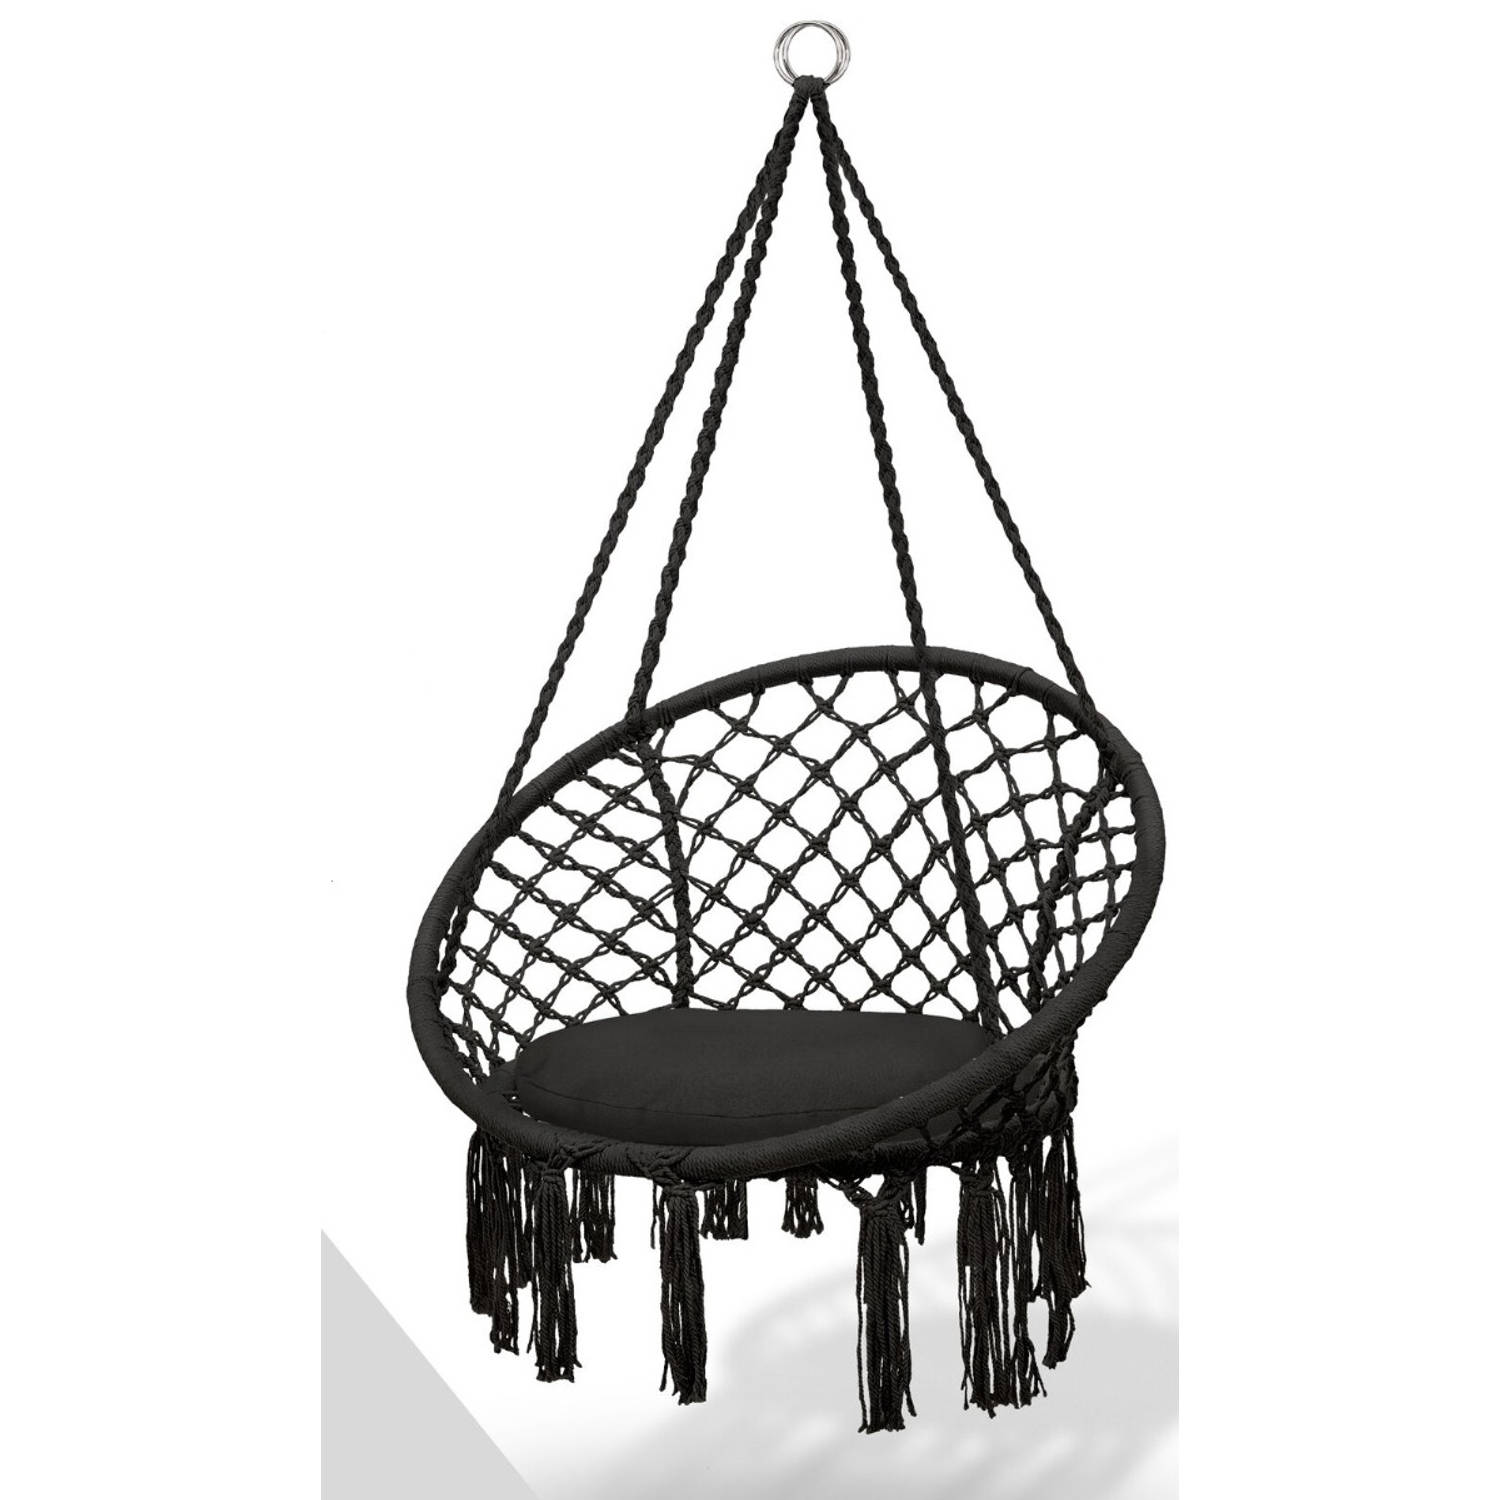 Tillvex- hangstoel -zwart -hangende schommel hangmat